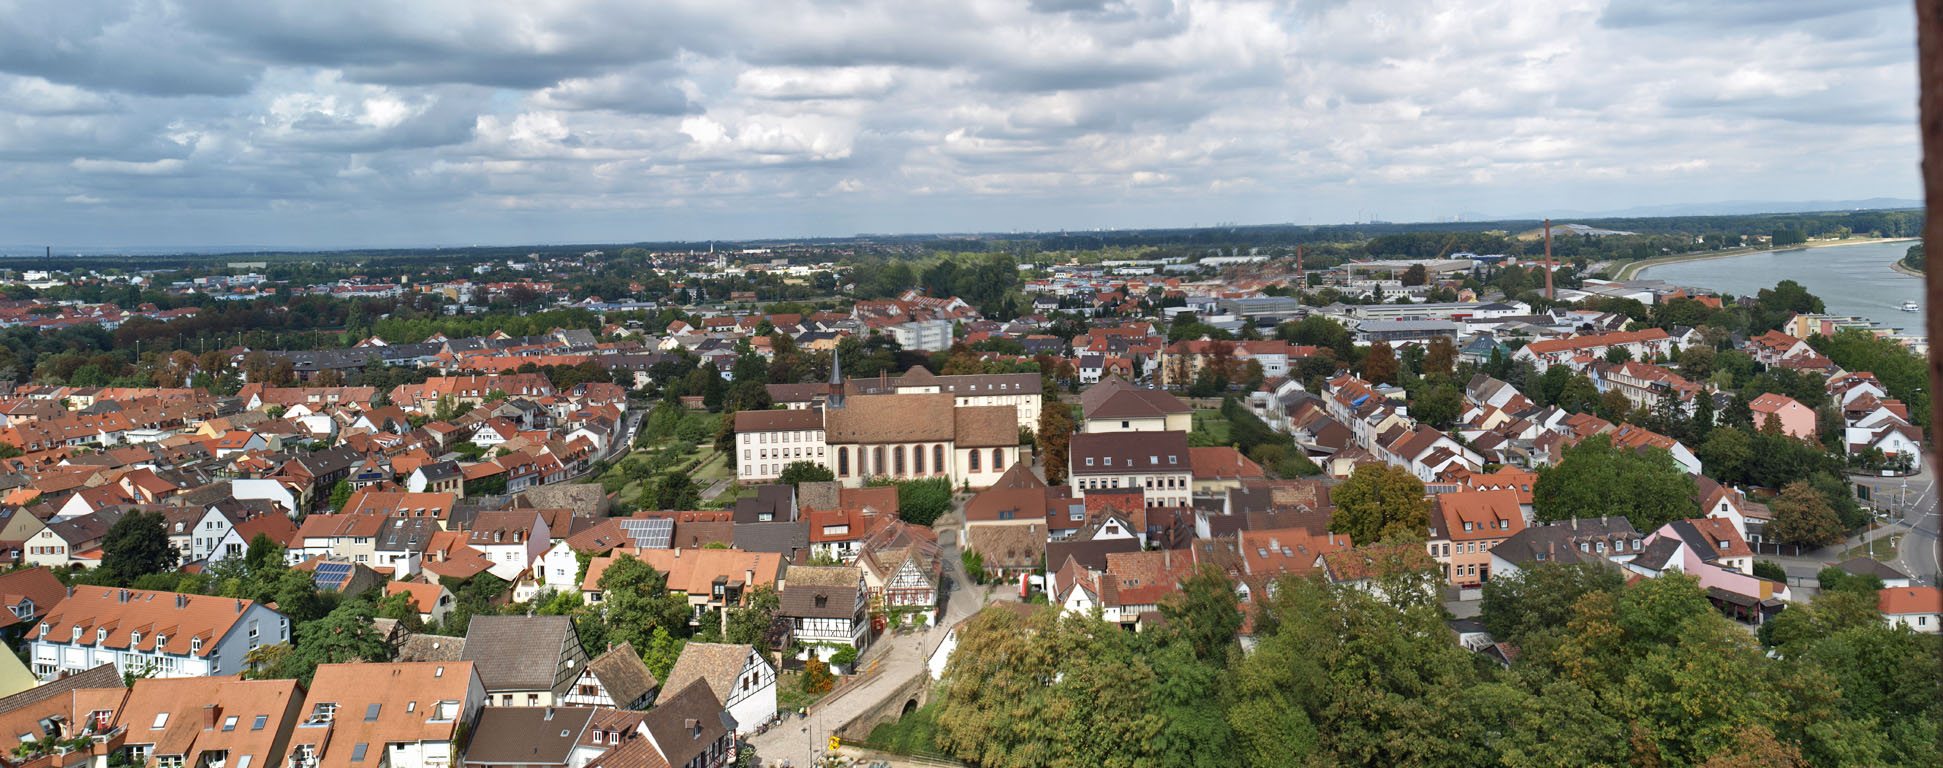 Datei:Speyer-Kaiserdom-NOTurm-10.jpg